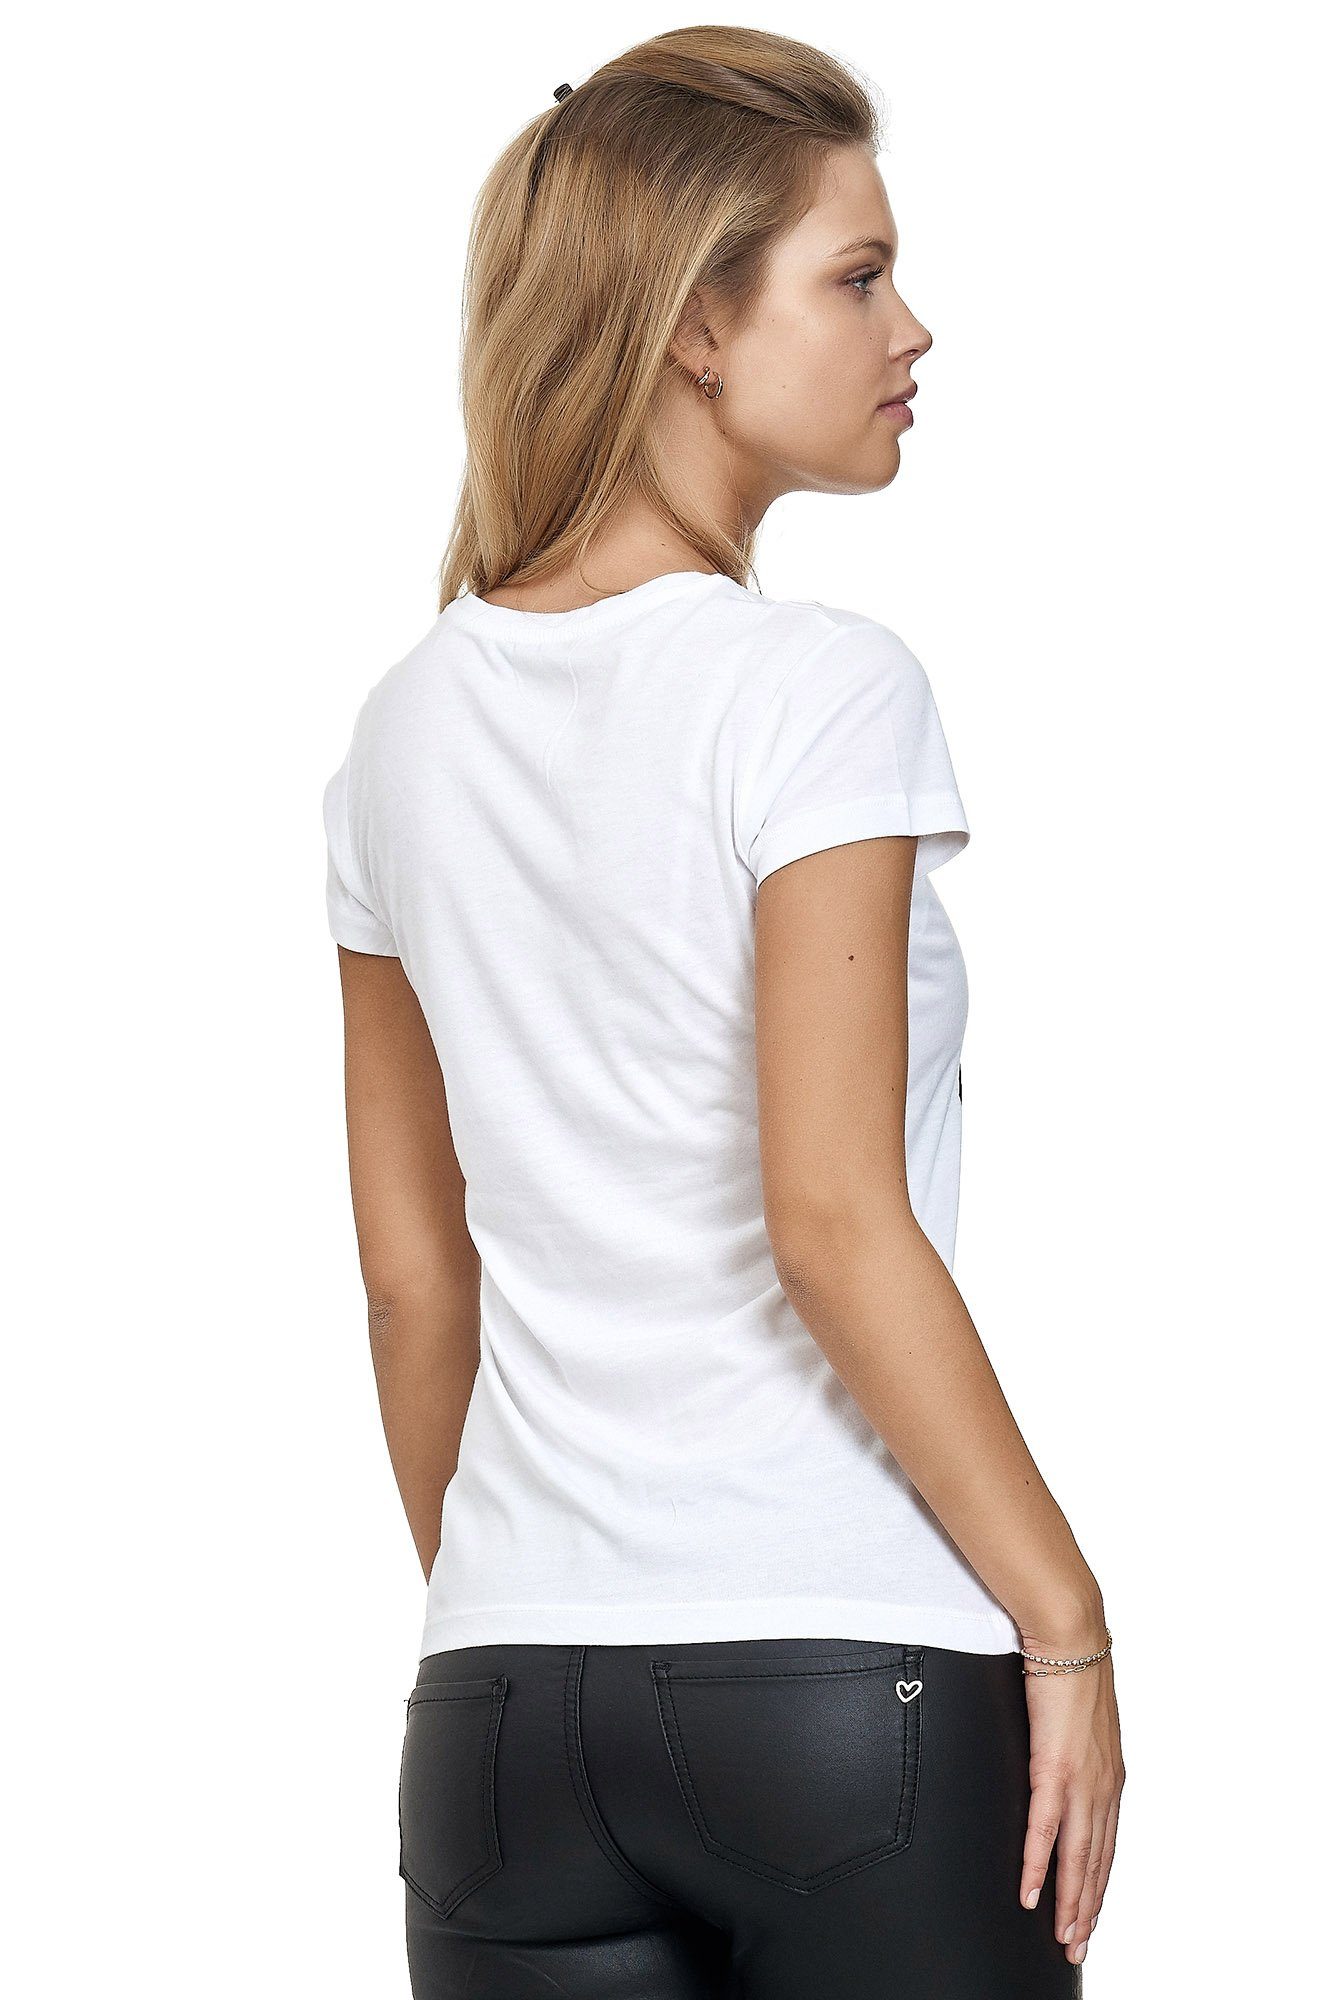 Frontprint mit T-Shirt glänzendem weiß Decay